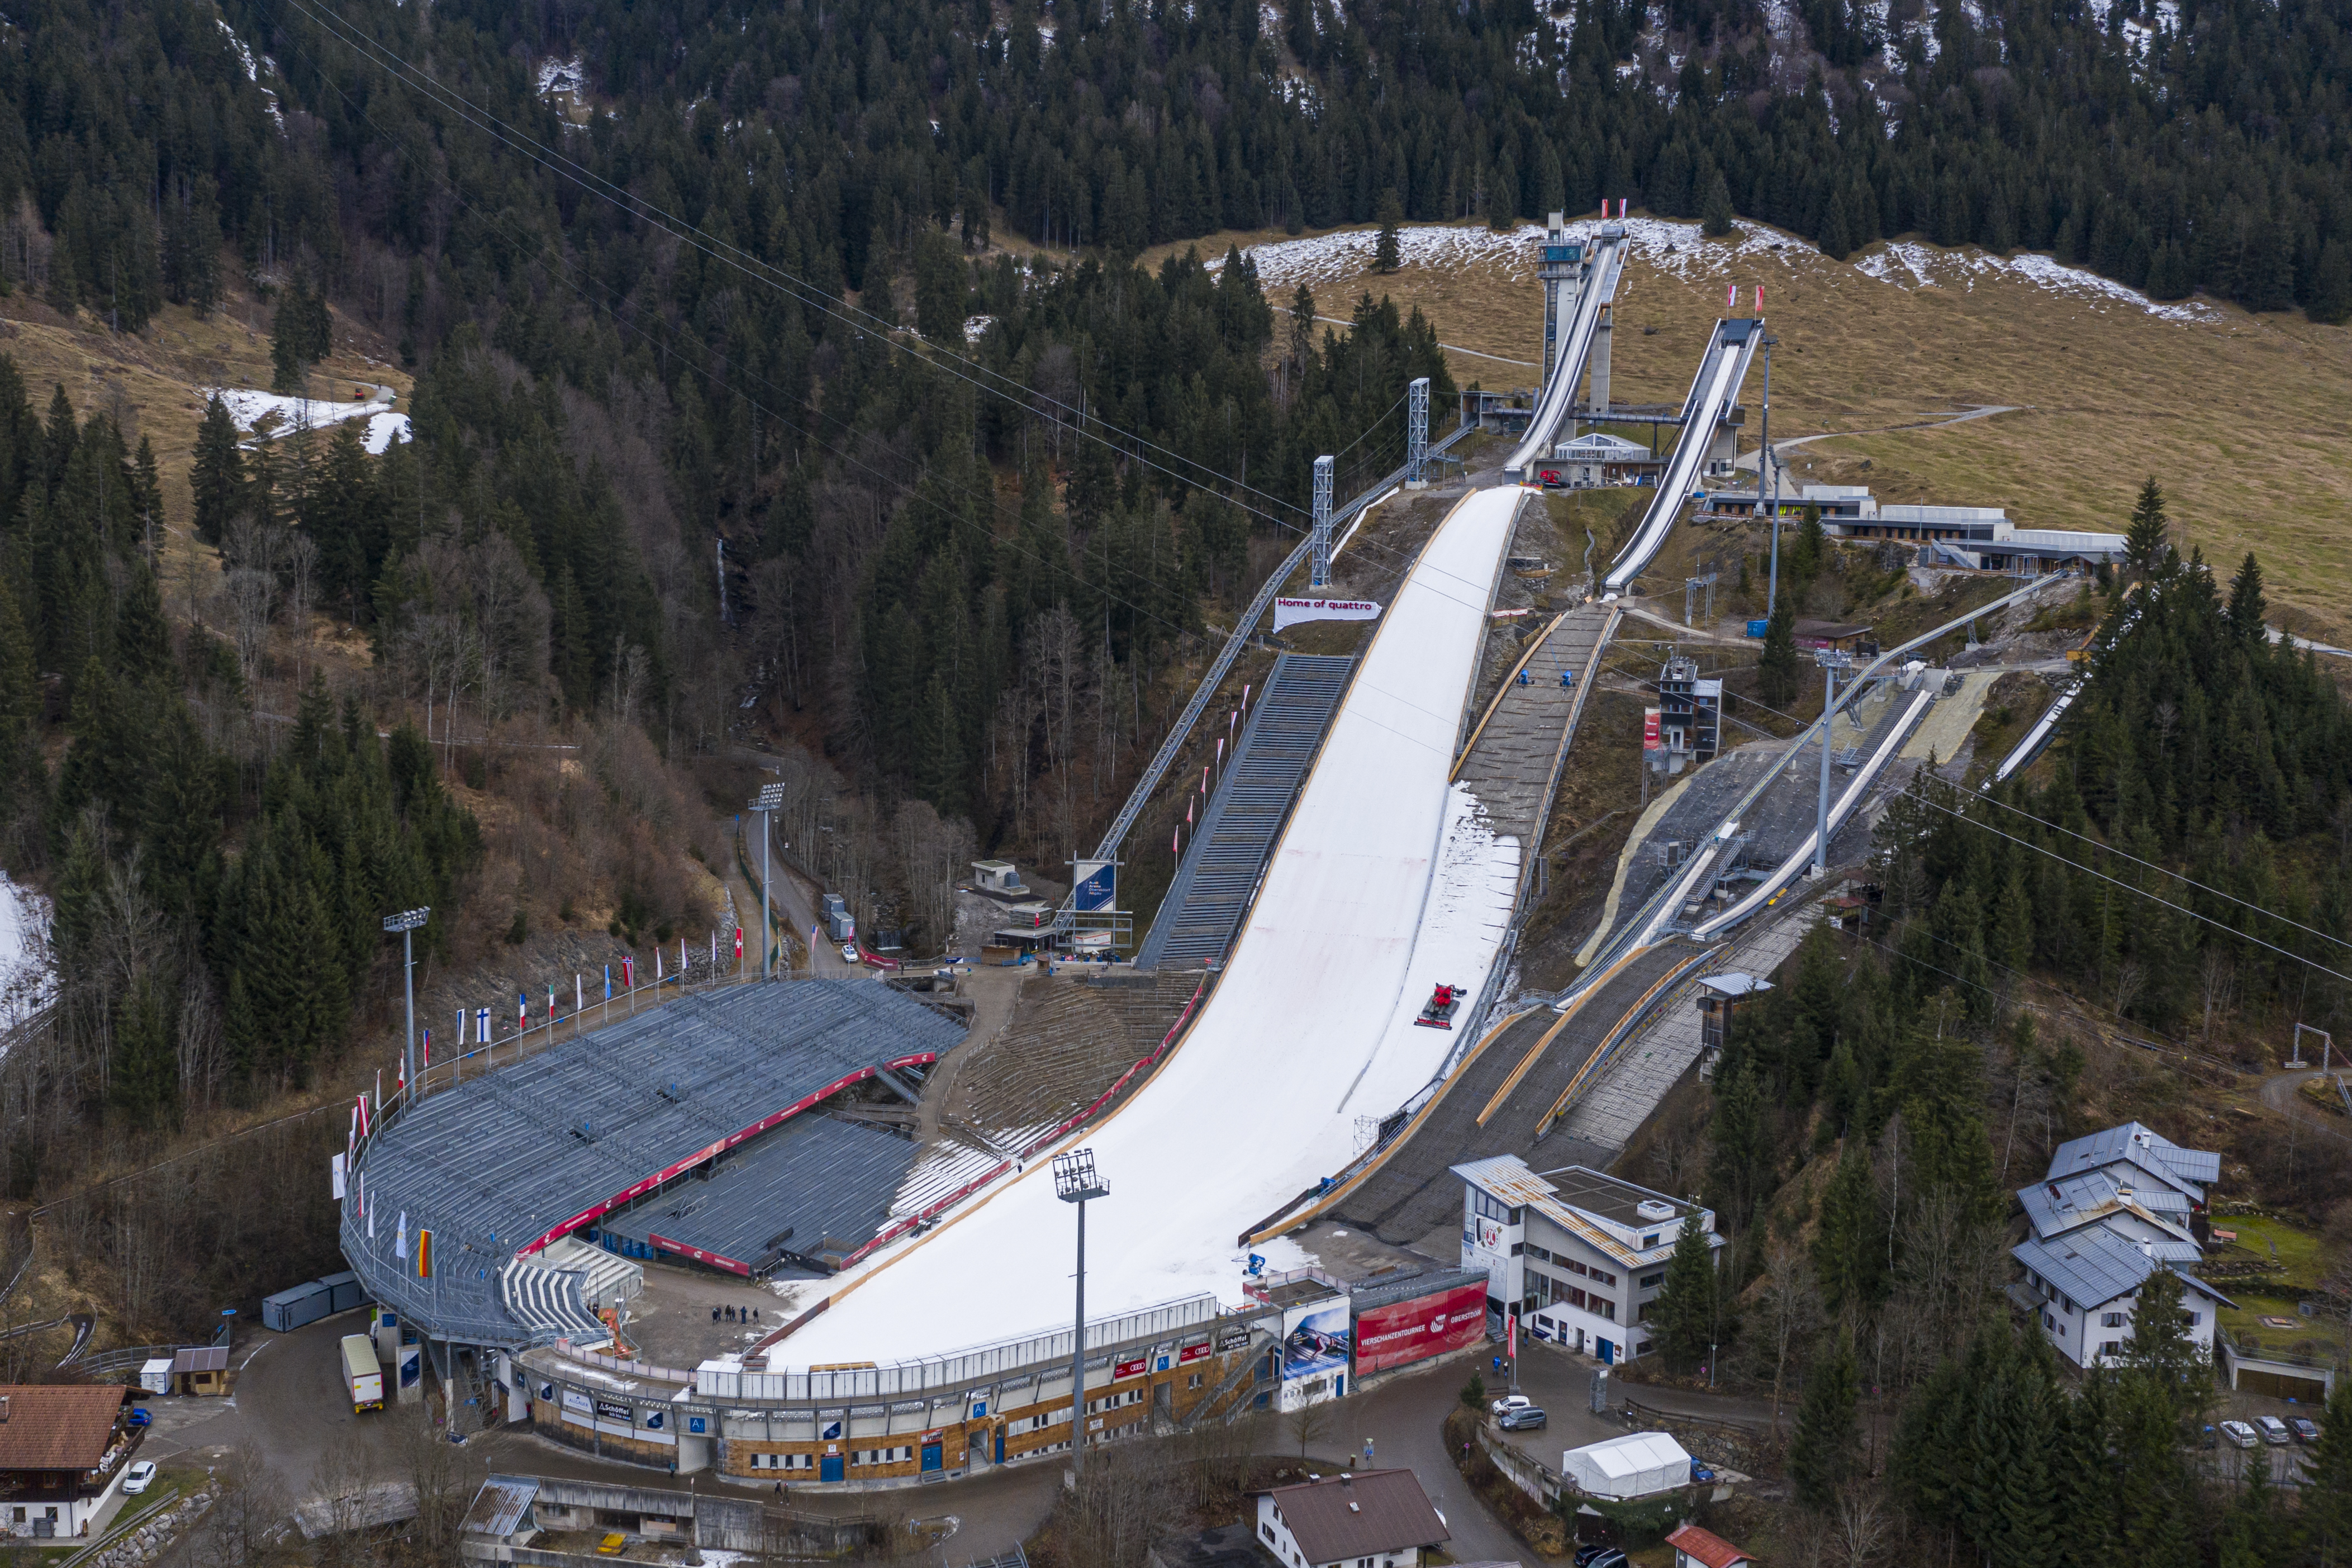 Ski_jumping_hill_oberstdorf_germany_1.jp